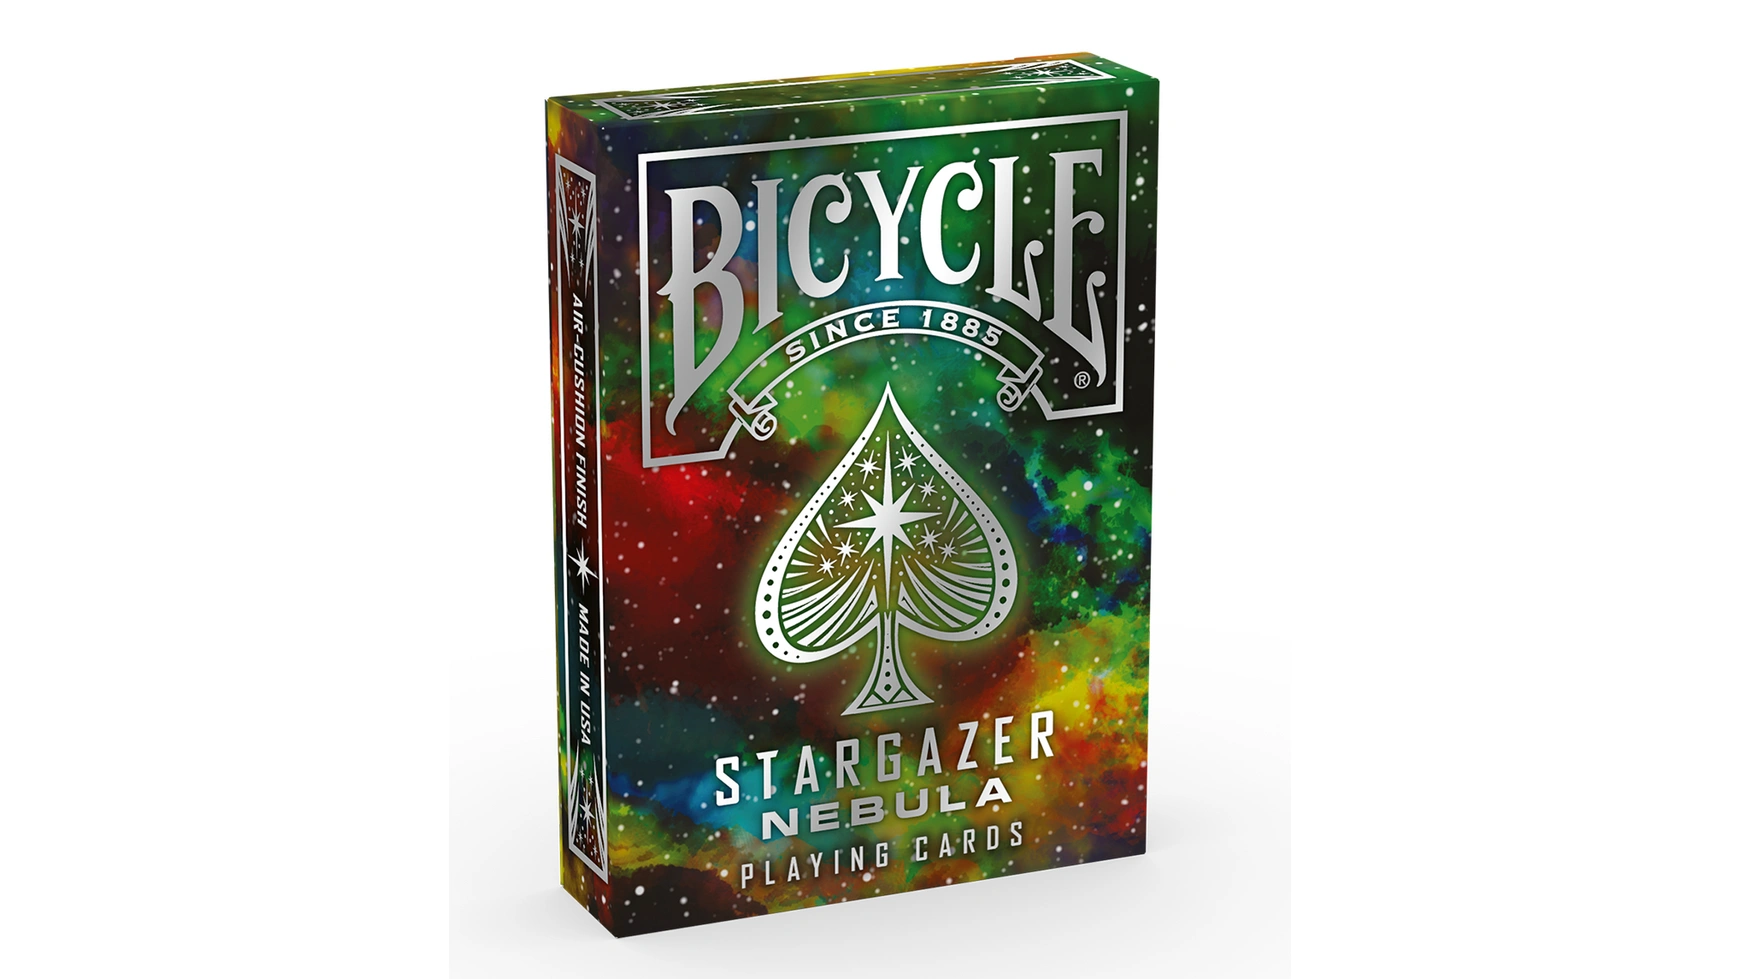 Bicycle игральные карты Stargazer Nebula